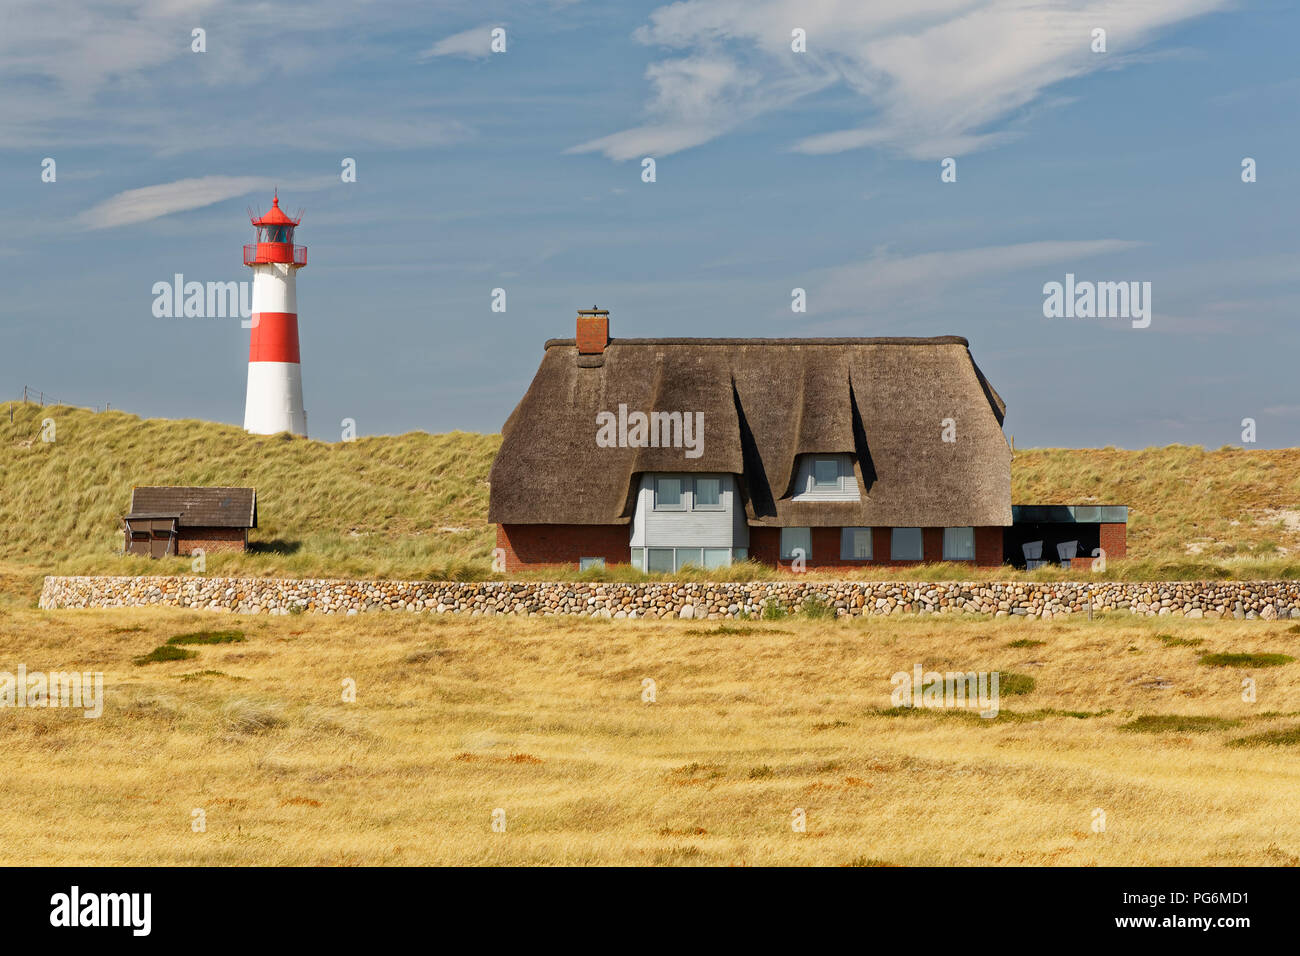 Paisaje dunar, este faro Ellenbogen, Lista del Mar del Norte isla de Sylt, en el norte de las islas de Frisia, en el norte de Frisia Foto de stock